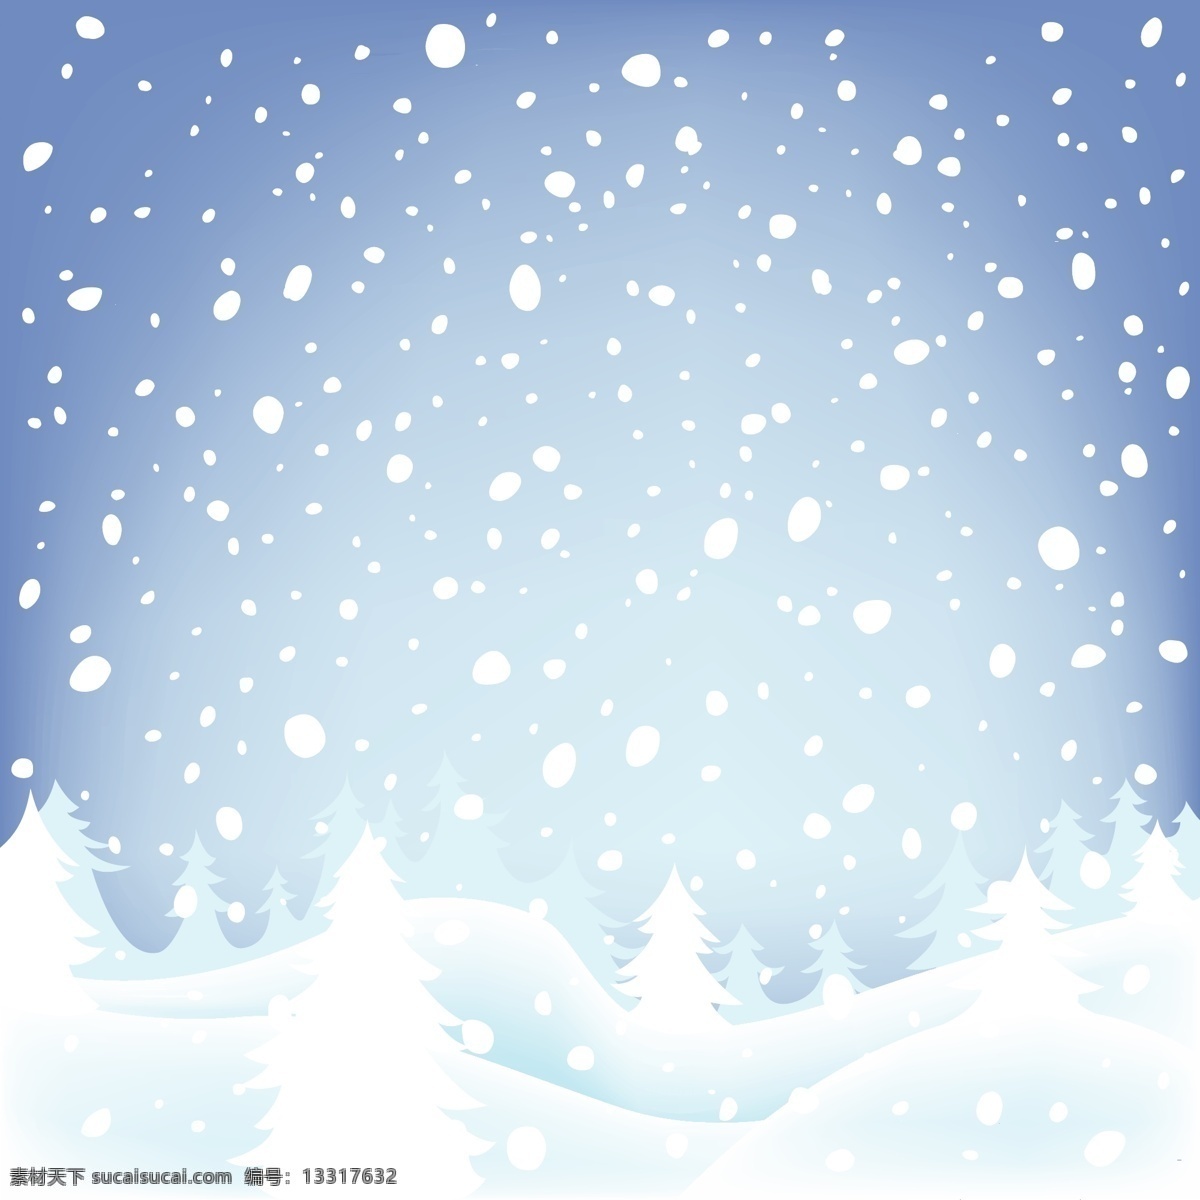 圣诞雪景雪地 christmas merry 缤纷圣诞 精美 圣诞 背景 元素 精品 蓝色经典 圣诞节雪景 圣诞老人 圣诞雪景 蓝色 雪地 可爱 雪花 圣诞节 装饰 漫天雪花 精美下雪背景 雪地树林 节日素材